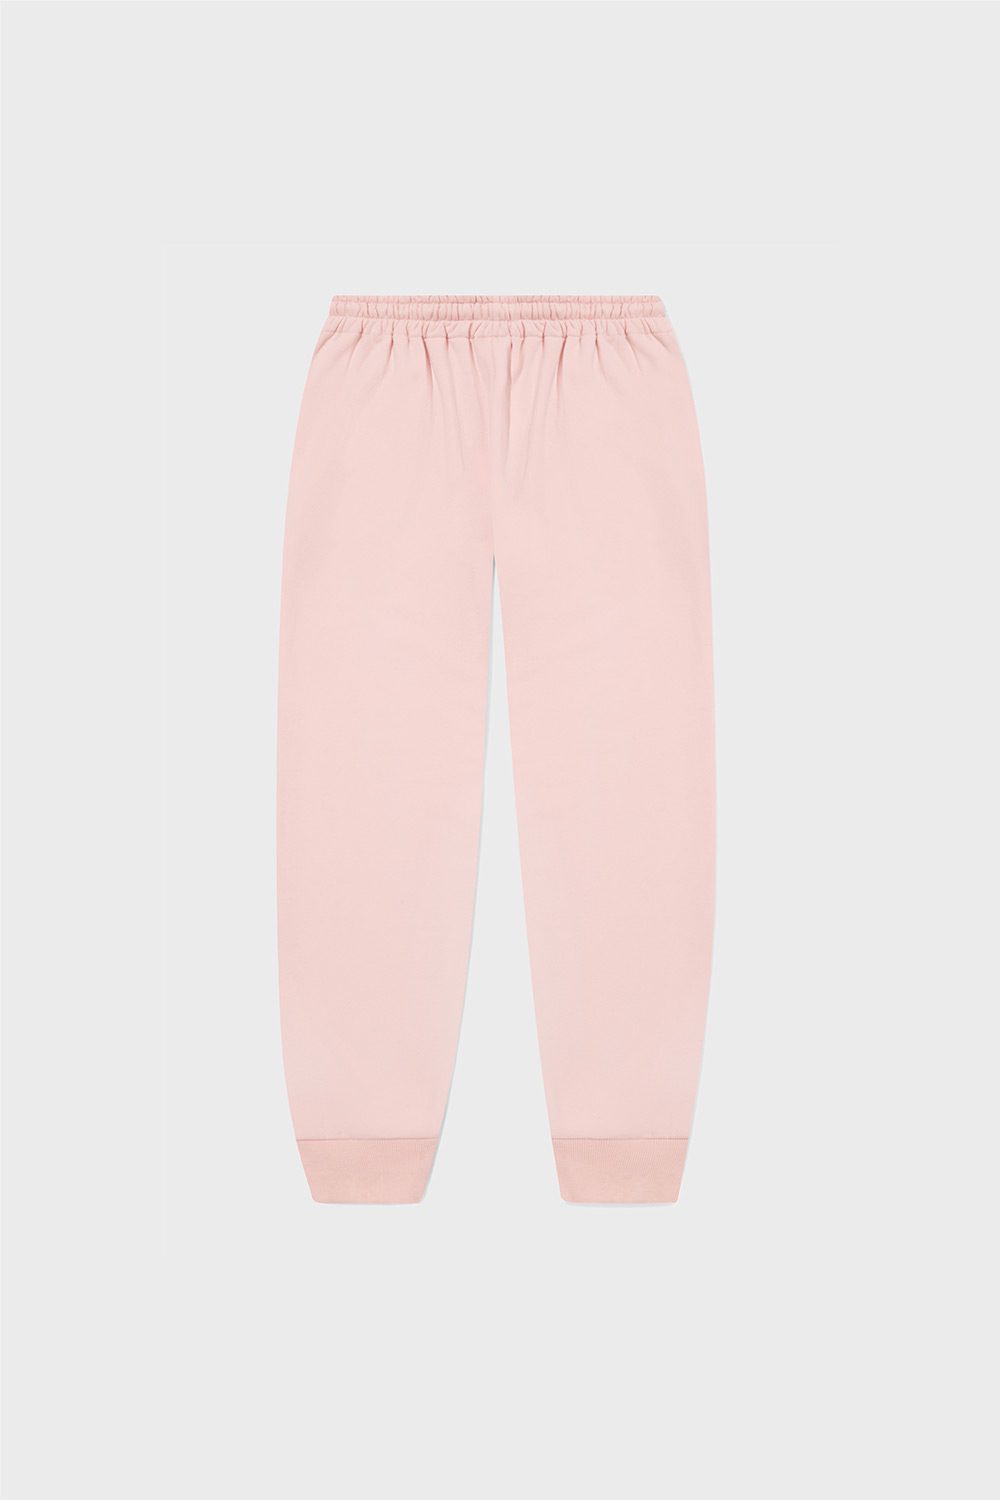 Pantaloni rosa posteriore